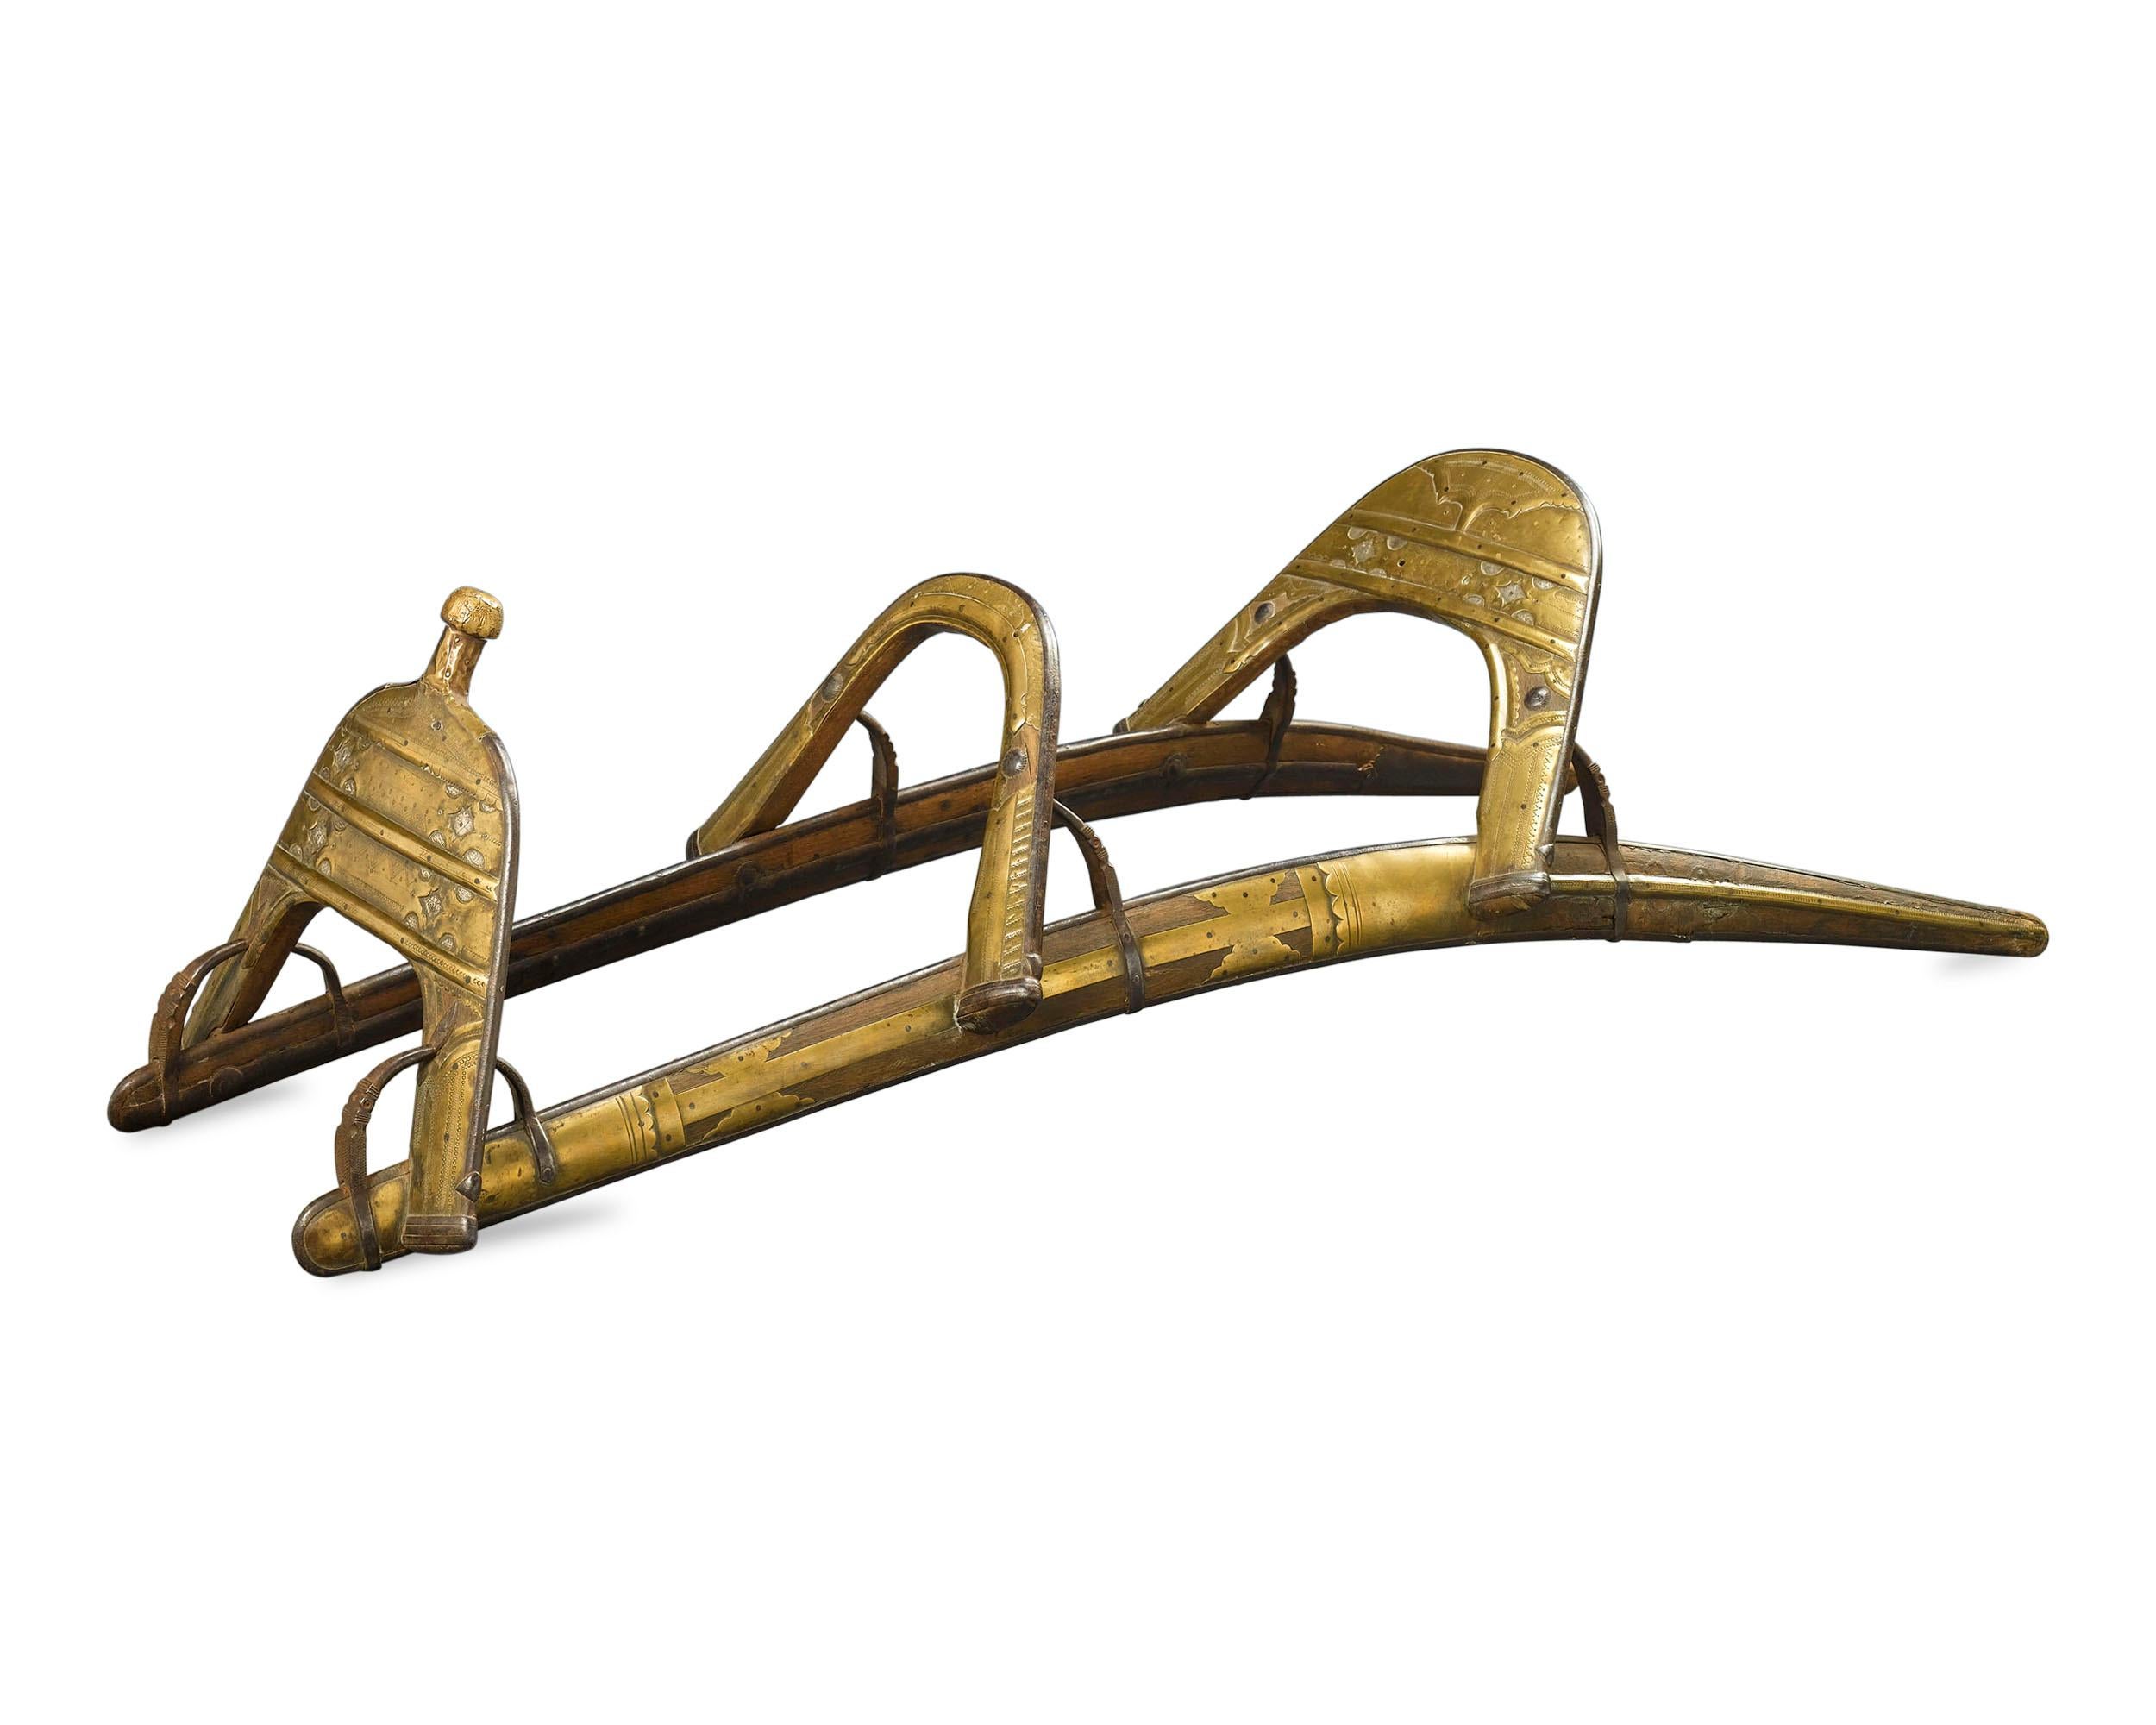 Cette pièce fascinante de l'histoire militaire est une selle de chameau créée et utilisée par le Régiment des Dromadaires pendant les campagnes égyptiennes de Napoléon entre 1798 et 1801. Le terme 